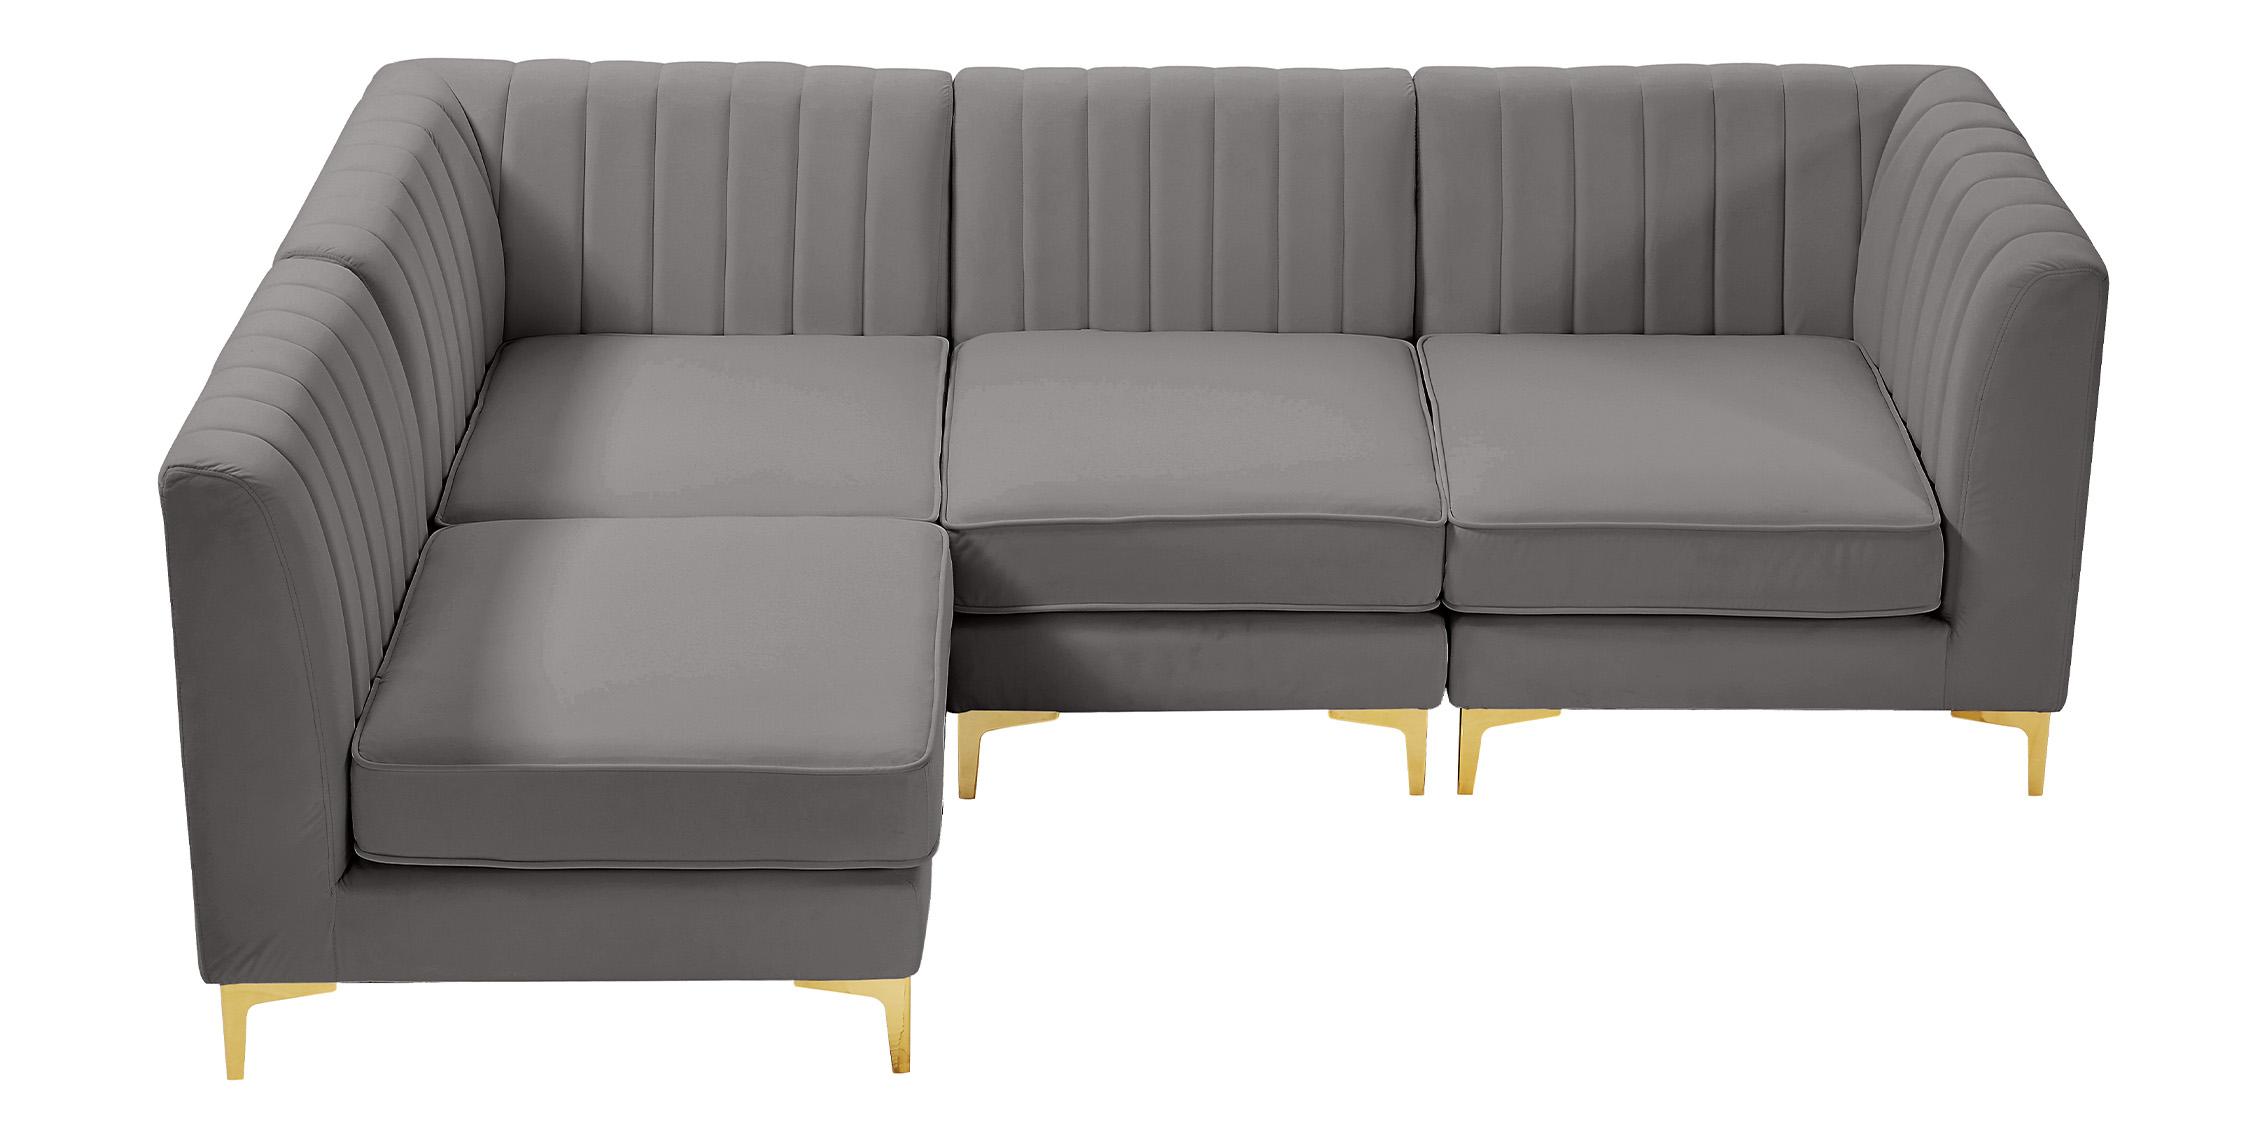 

    
604Grey-Sec4A Meridian Furniture Modular Sectional Sofa
